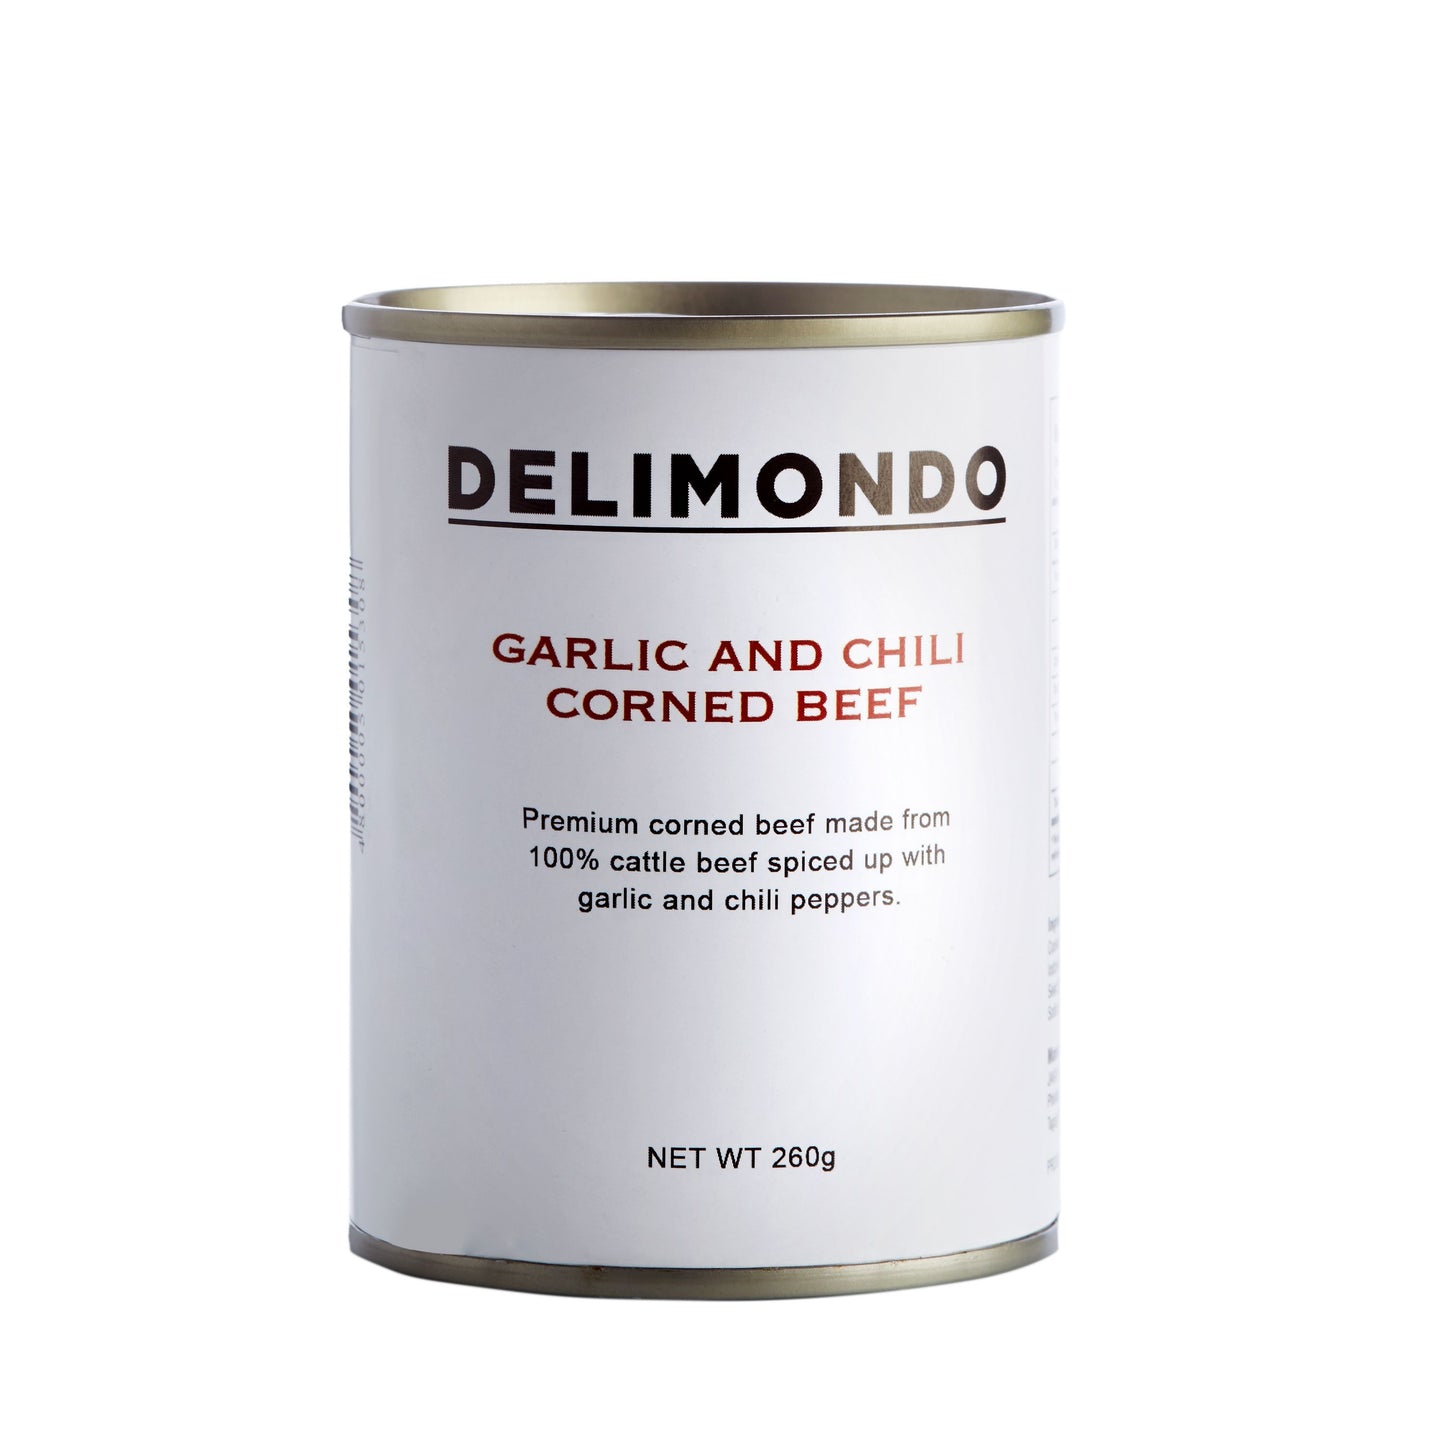 DELIMONDO GARLIC AND CHILI CORNED BEEF